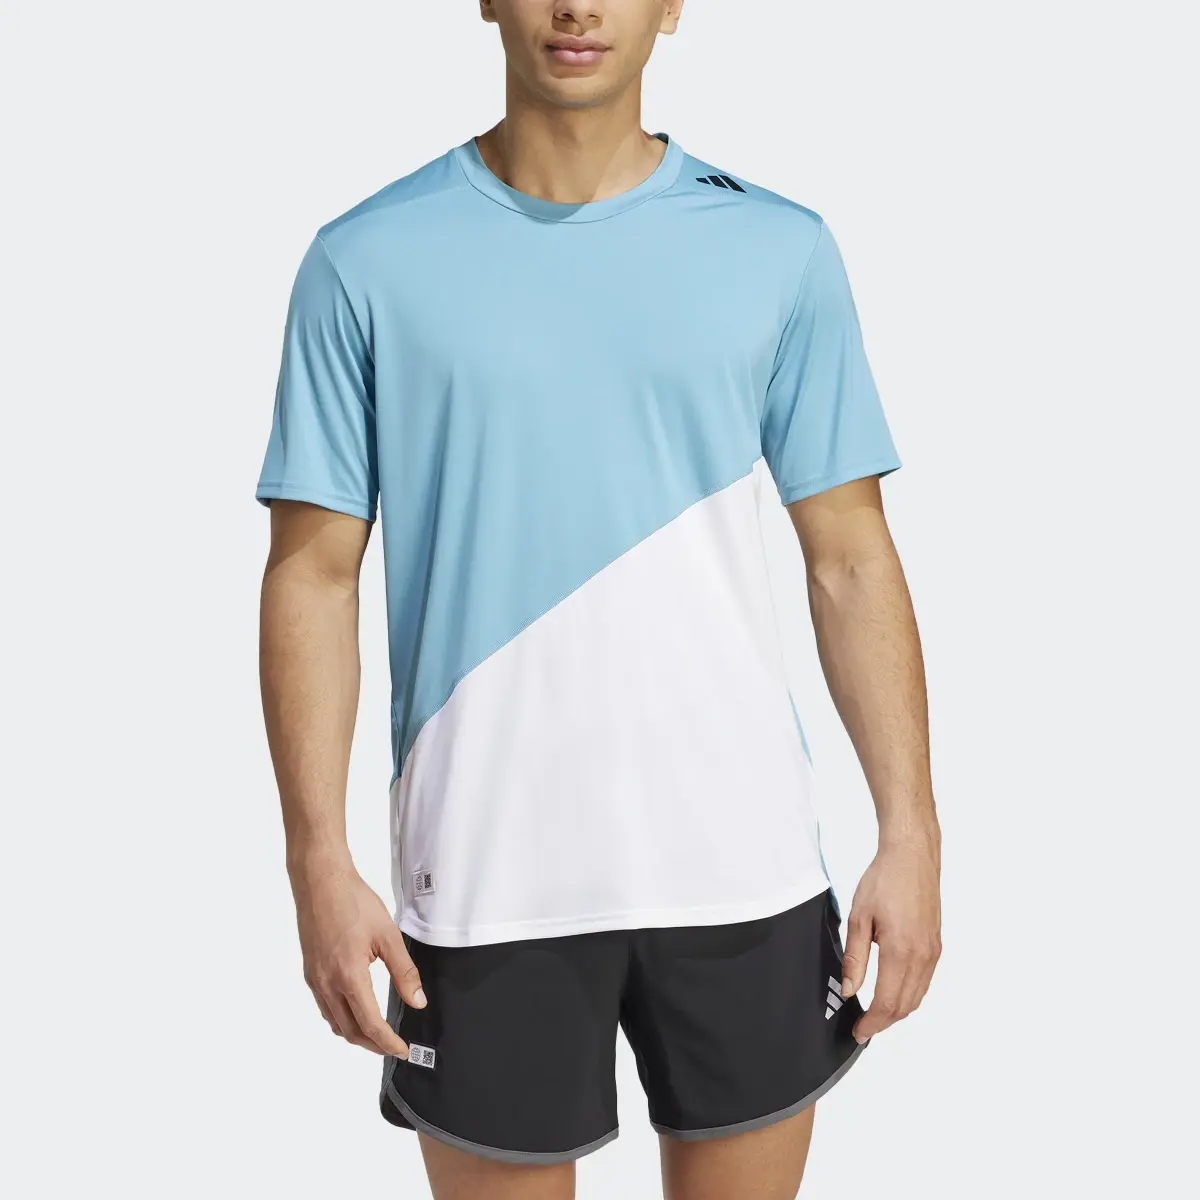 Adidas T-shirt de running Made to be Remade. 1